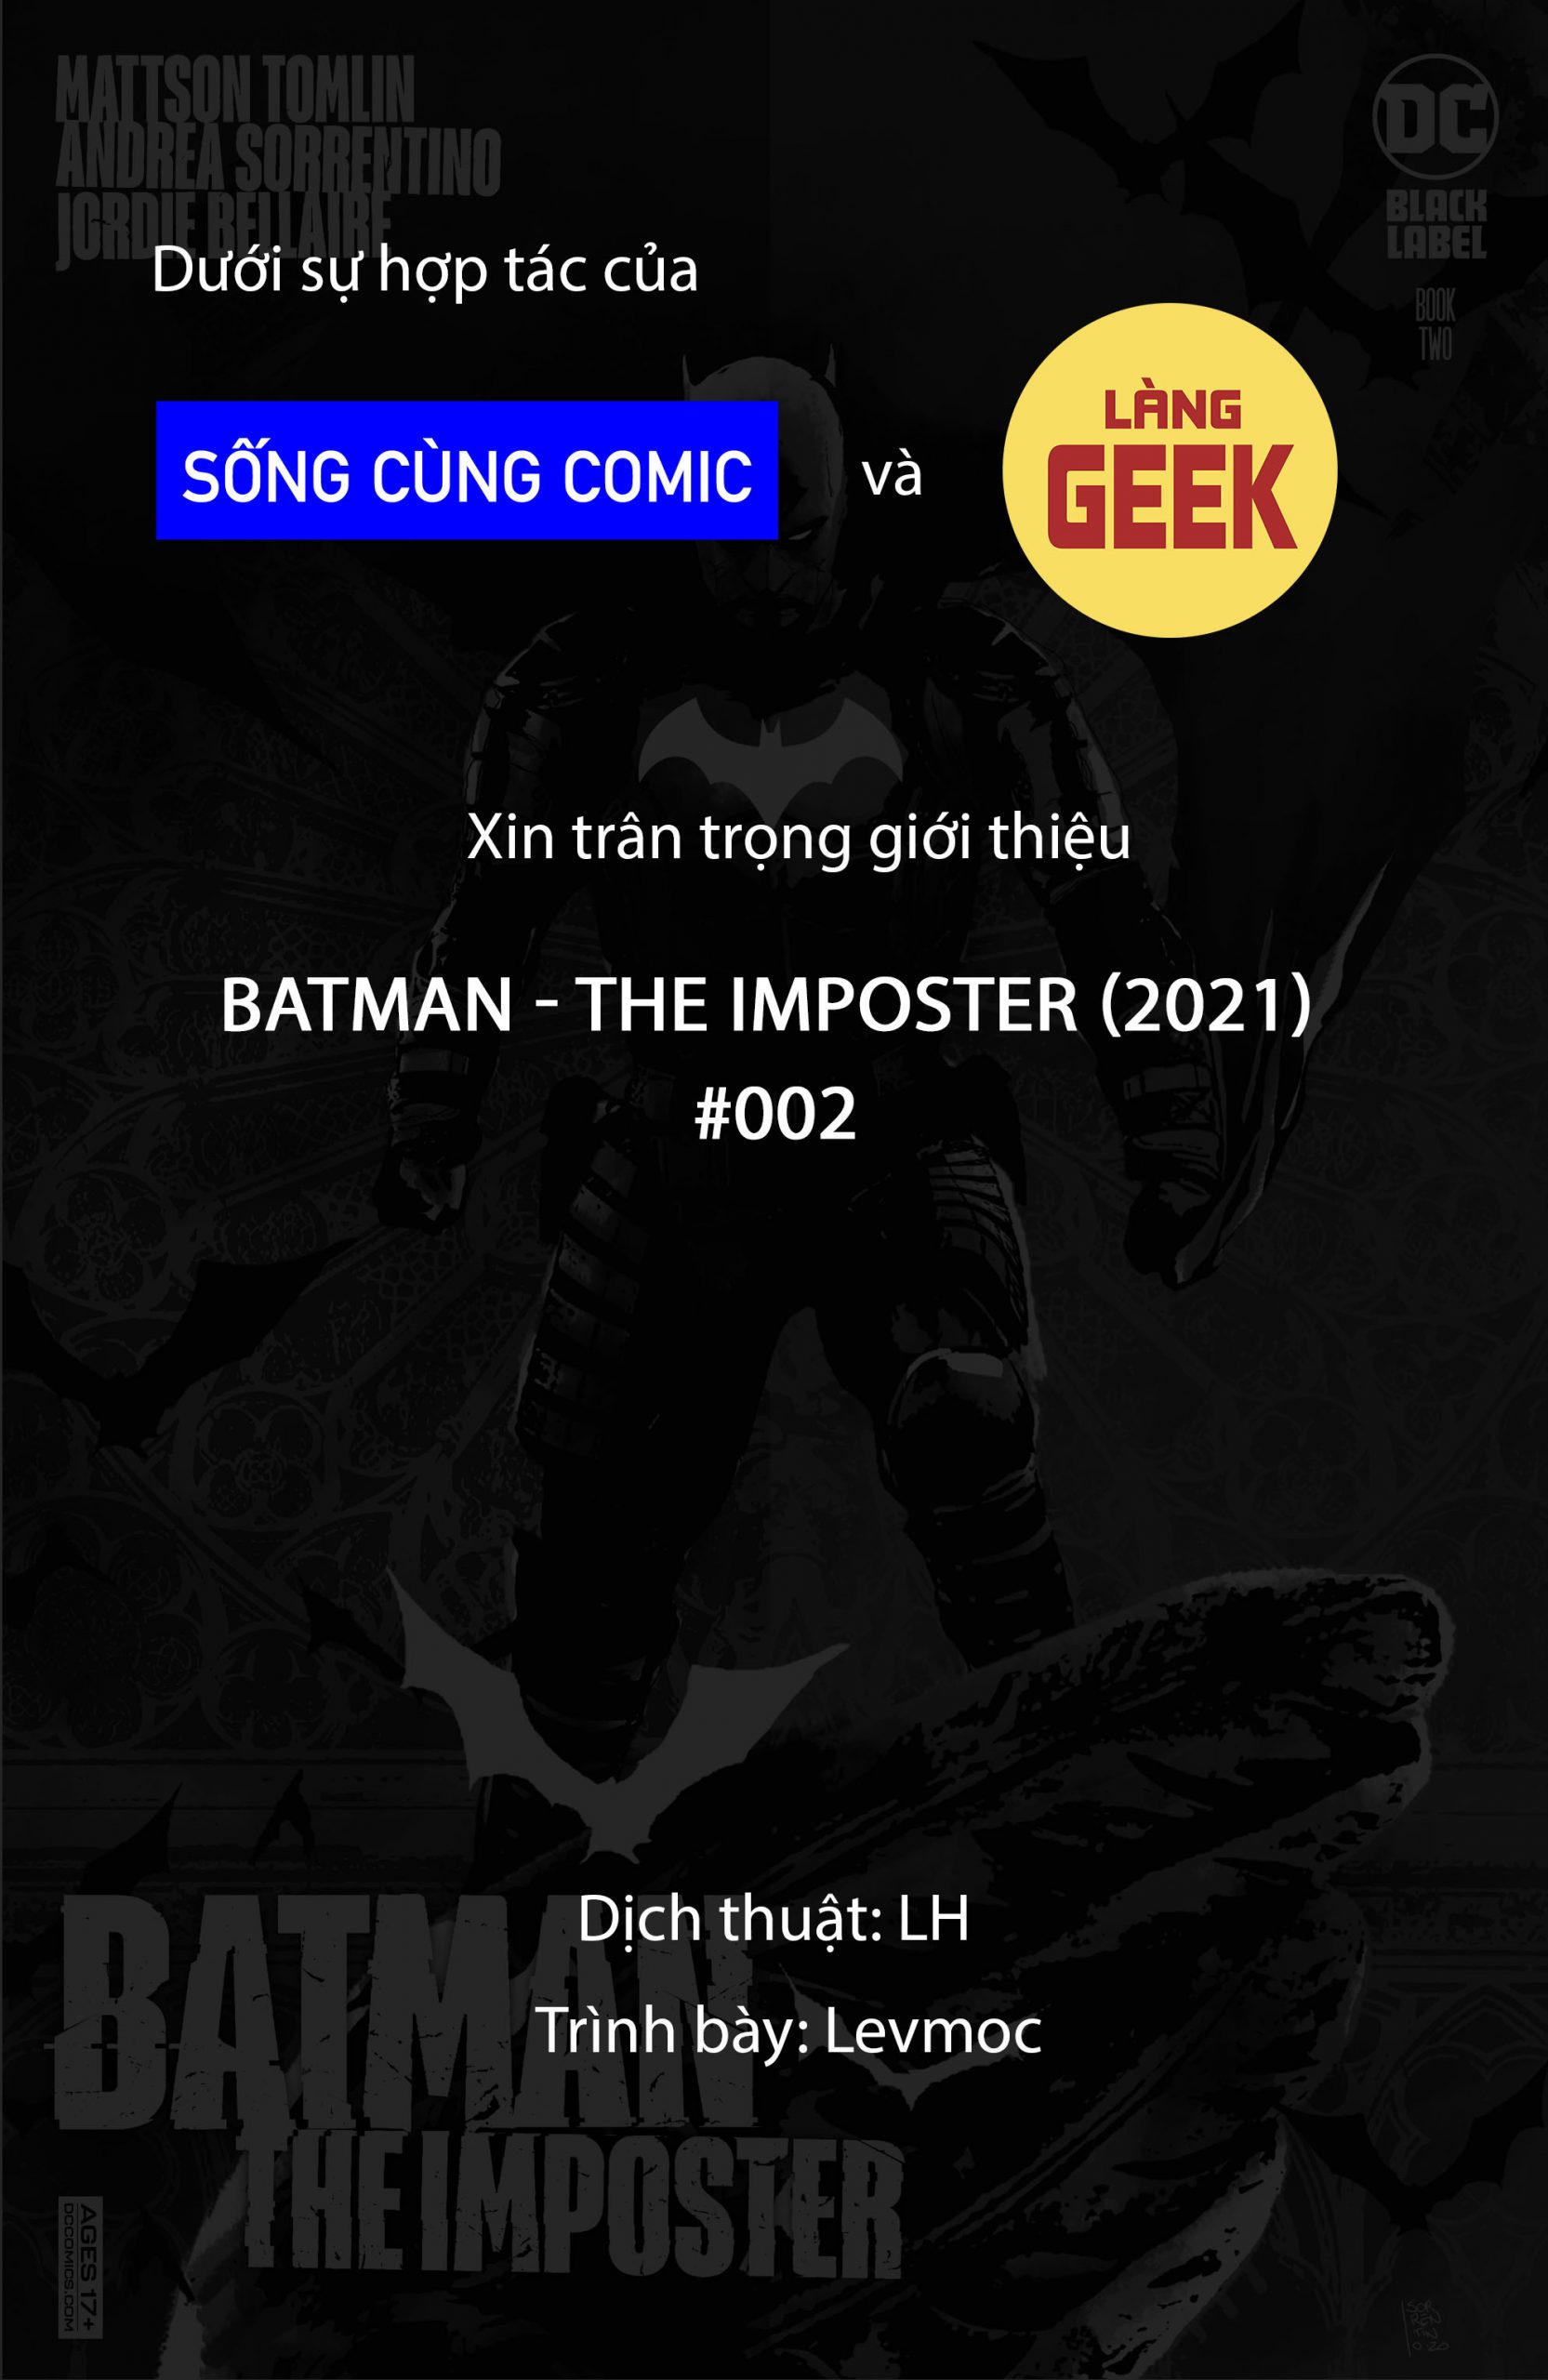 https://langgeek.net/wp-content/uploads/2021/11/Batman-The-Imposter-2021-002-00-scaled.jpg